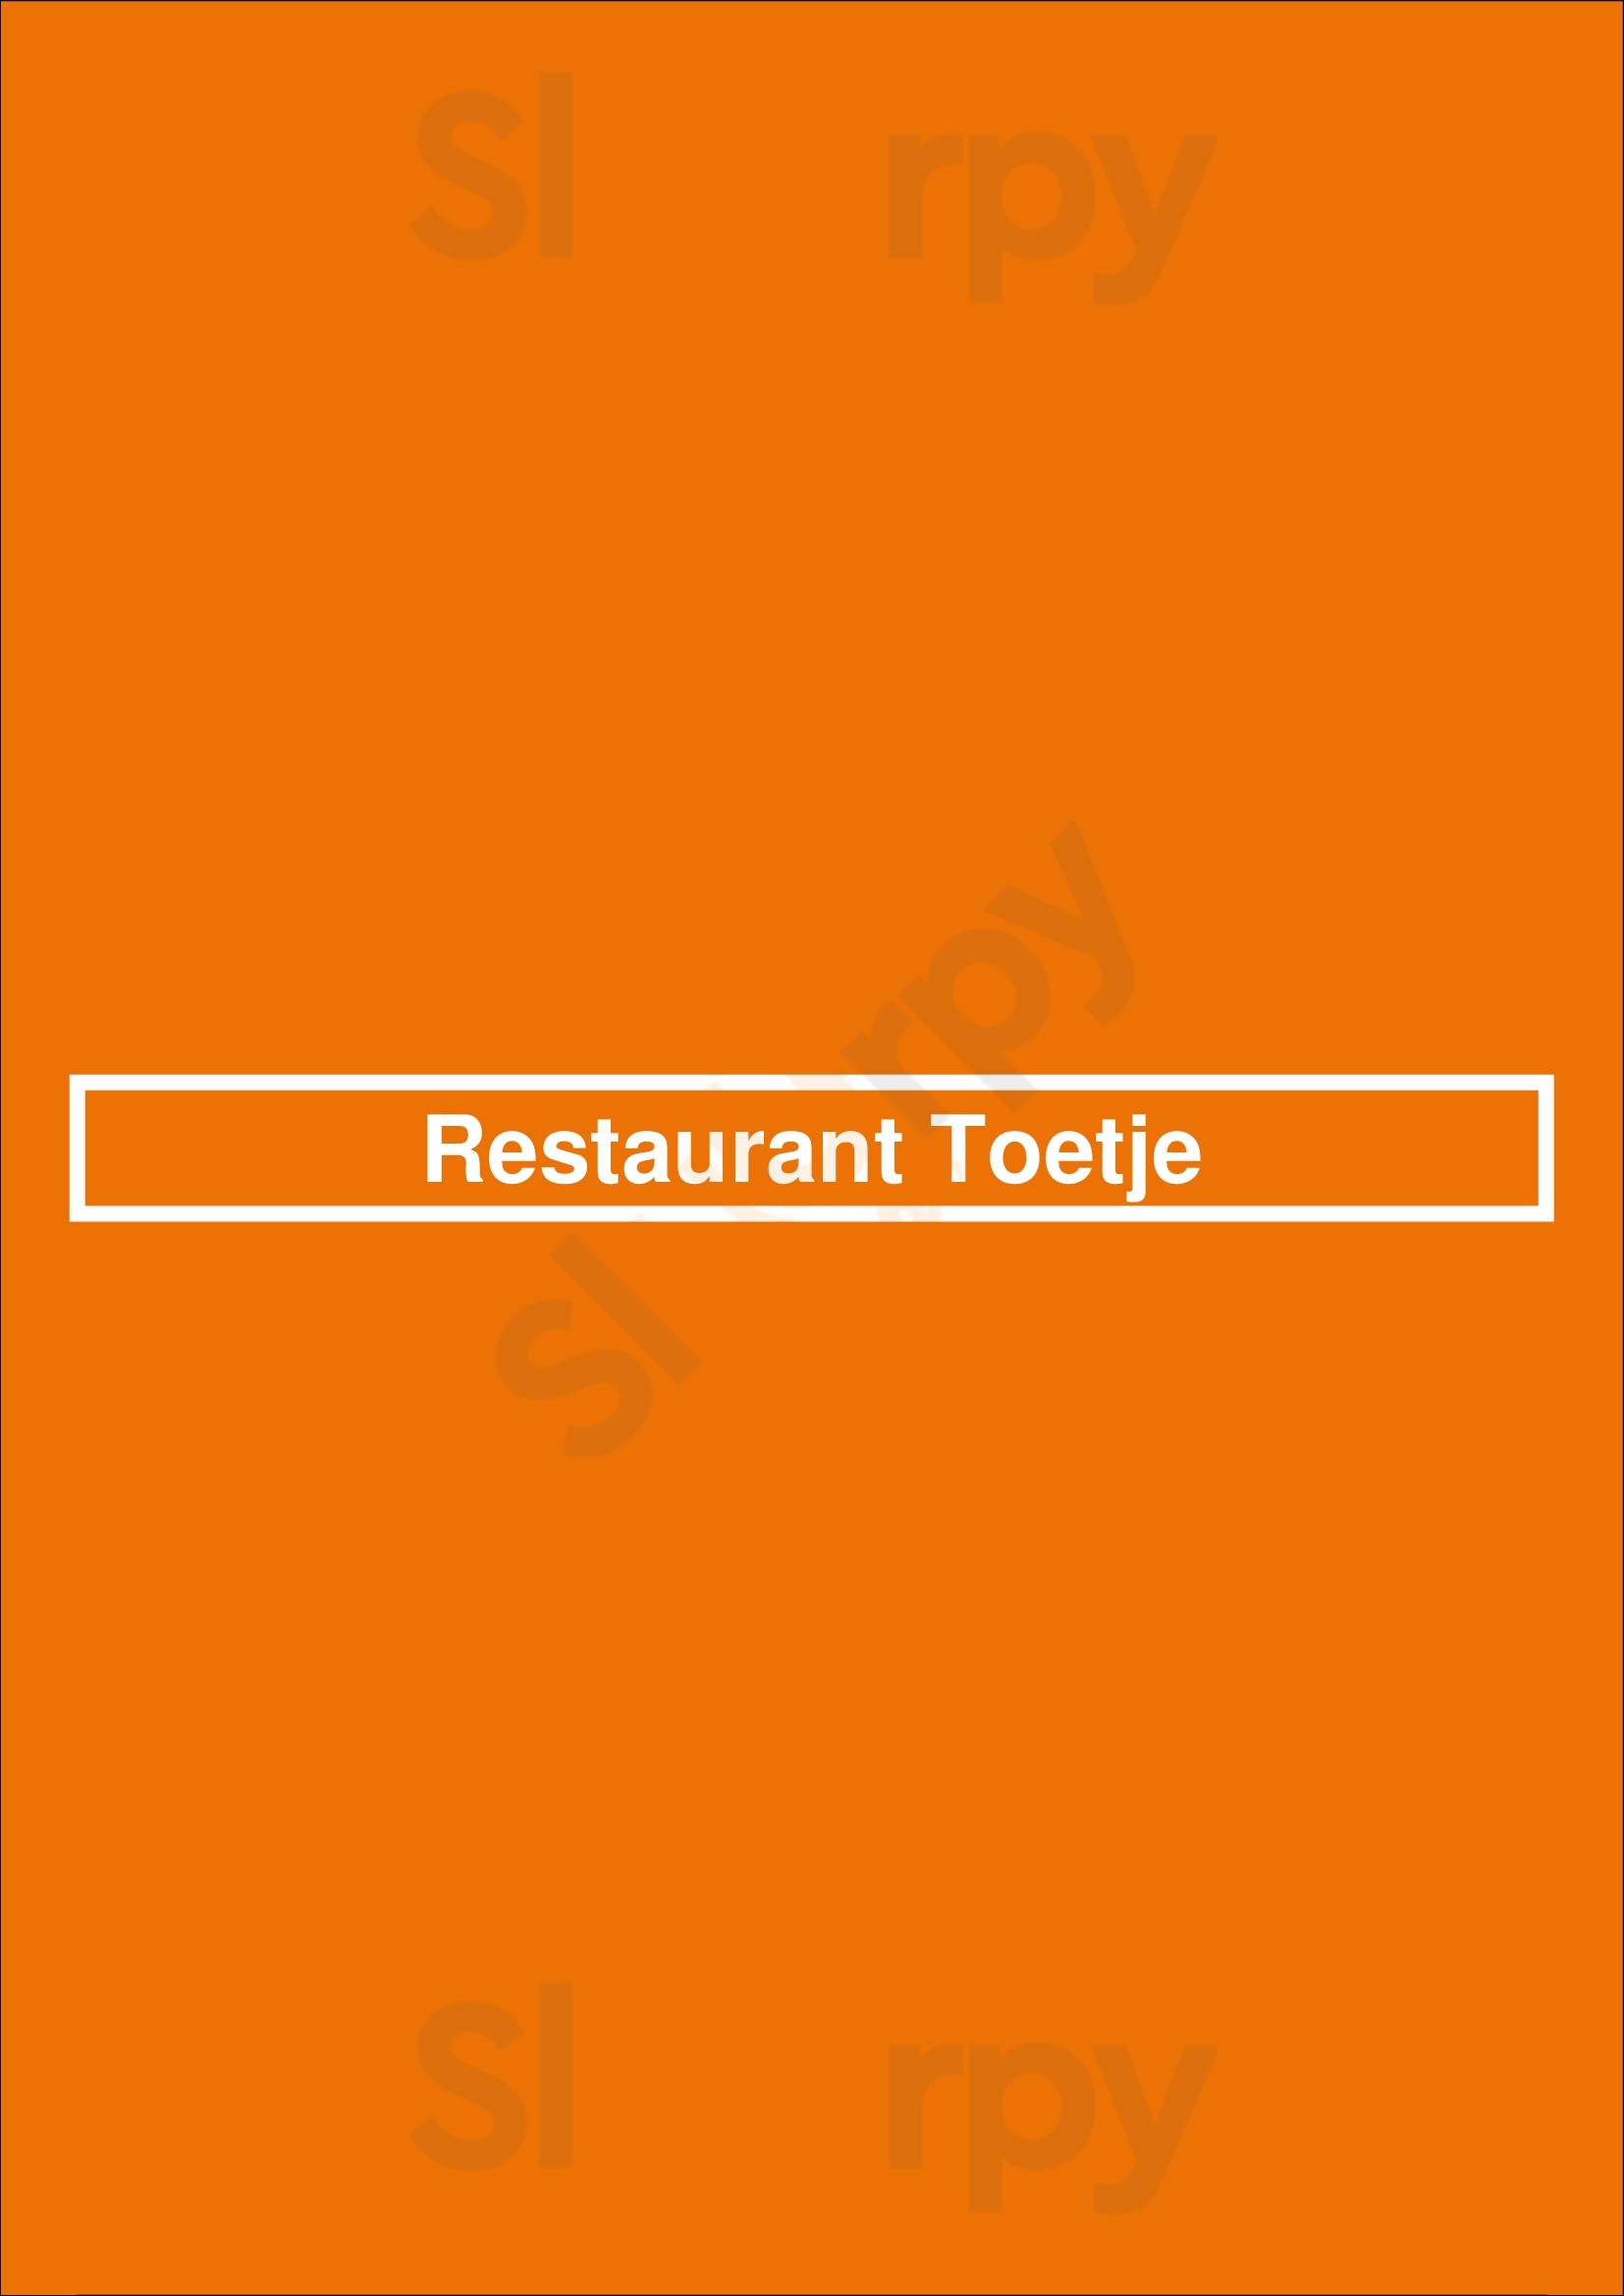 Restaurant Toetje Haarzuilens Menu - 1